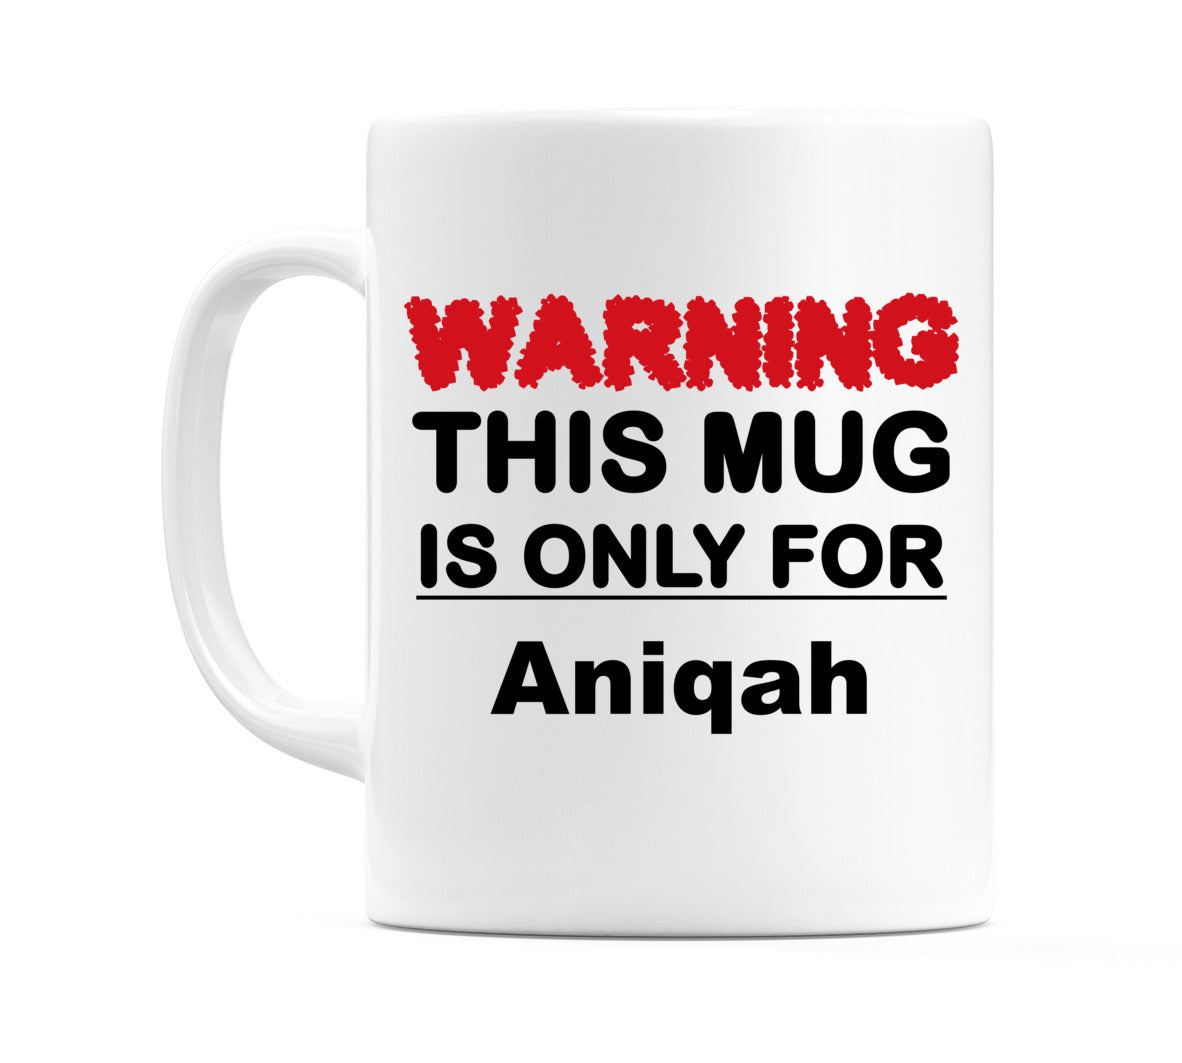 Warning This Mug is ONLY for Aniqah Mug